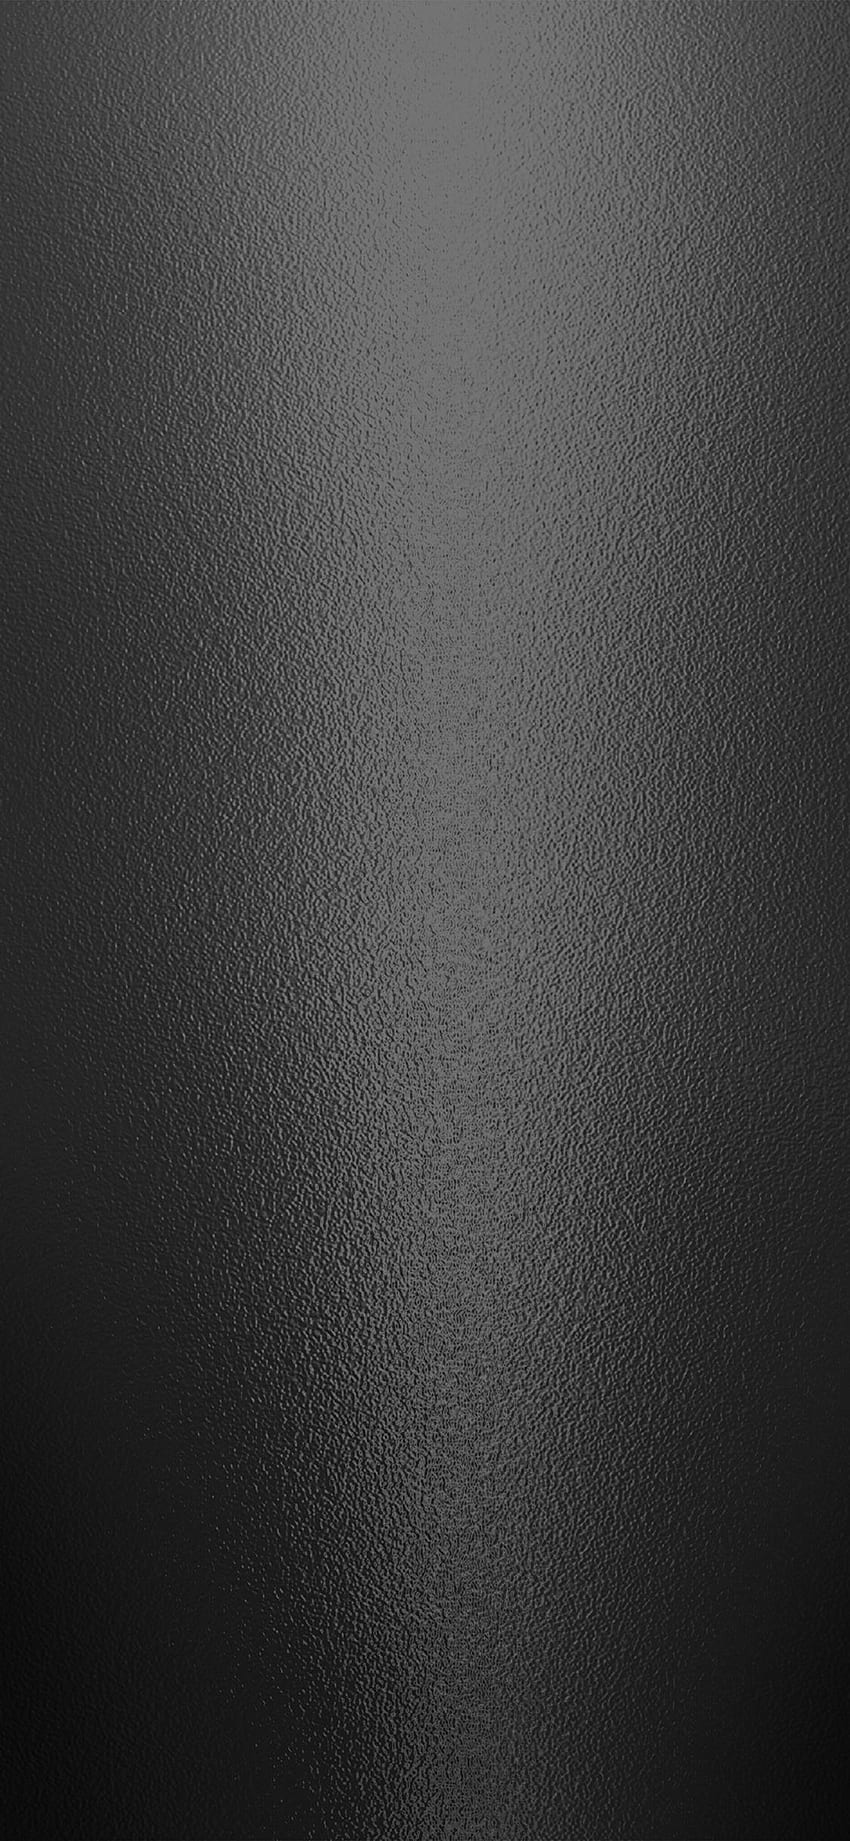 iPhoneX. patrón de textura de metal negro oscuro, aluminio cepillado negro fondo de pantalla del teléfono